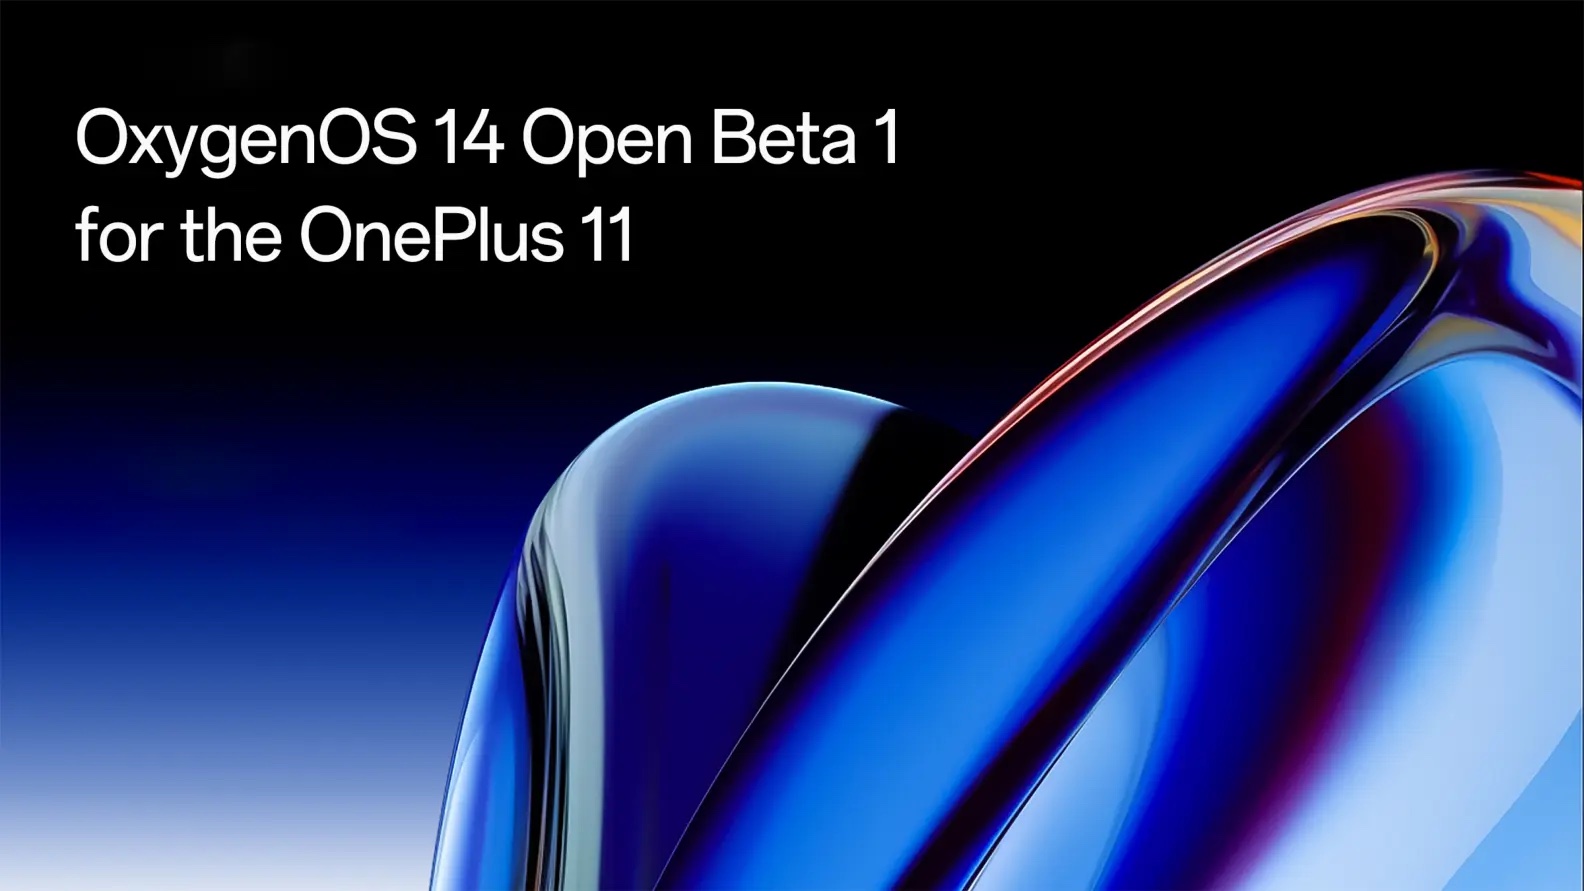  На OnePlus 11 вышла открытая бета OxygenOS 14 на основе Android 14 Другие устройства  - pervaa_otkrytaa_beta_oxygenos_14_na_android_14_uzhe_na_oneplus_11_picture2_0